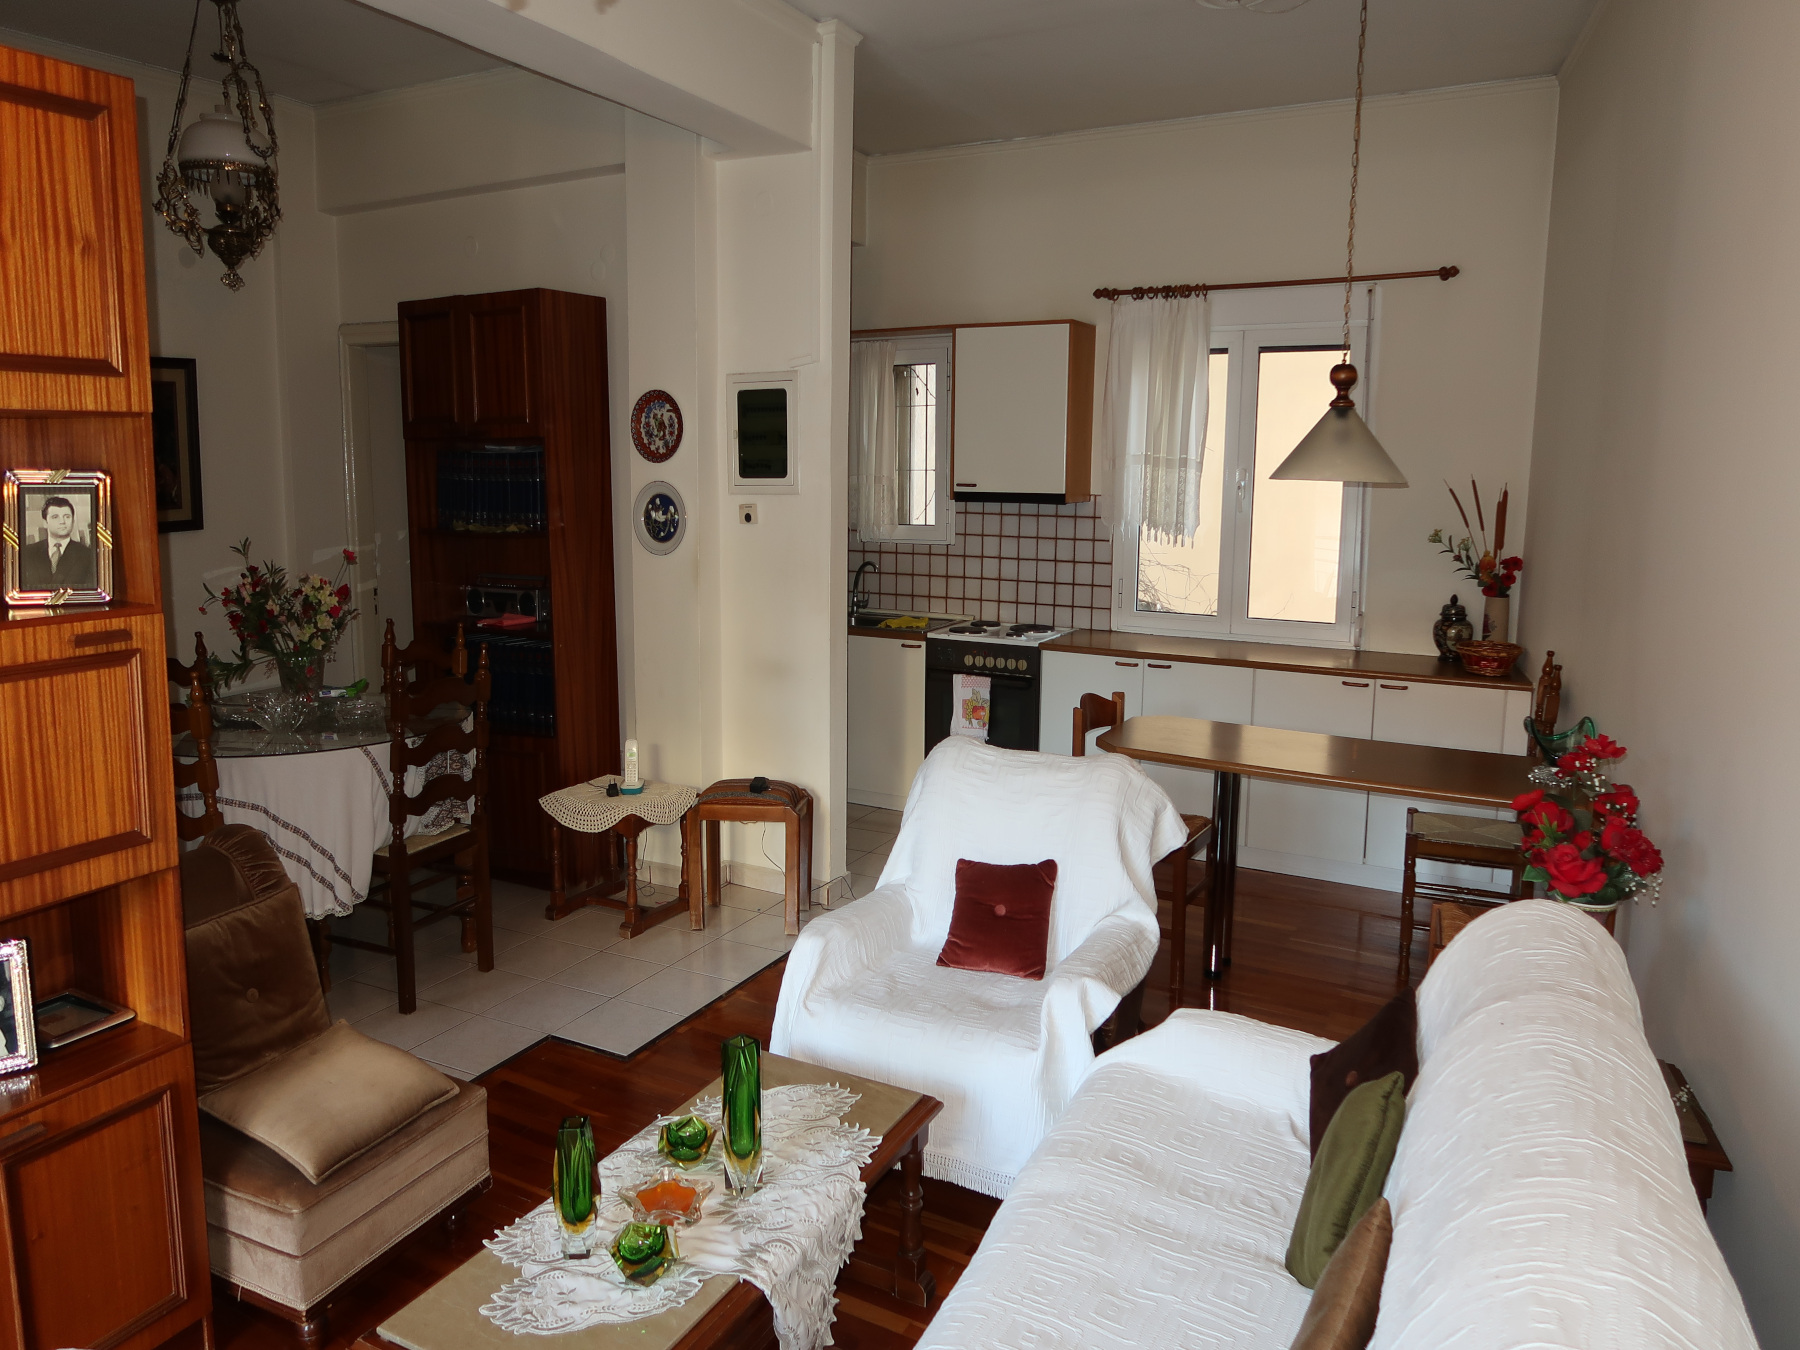 Πωλείται 4αρι διαμέρισμα 90 τ.μ. 1ου ορόφου στην περιοχή του Άλσους στα Γιάννενα